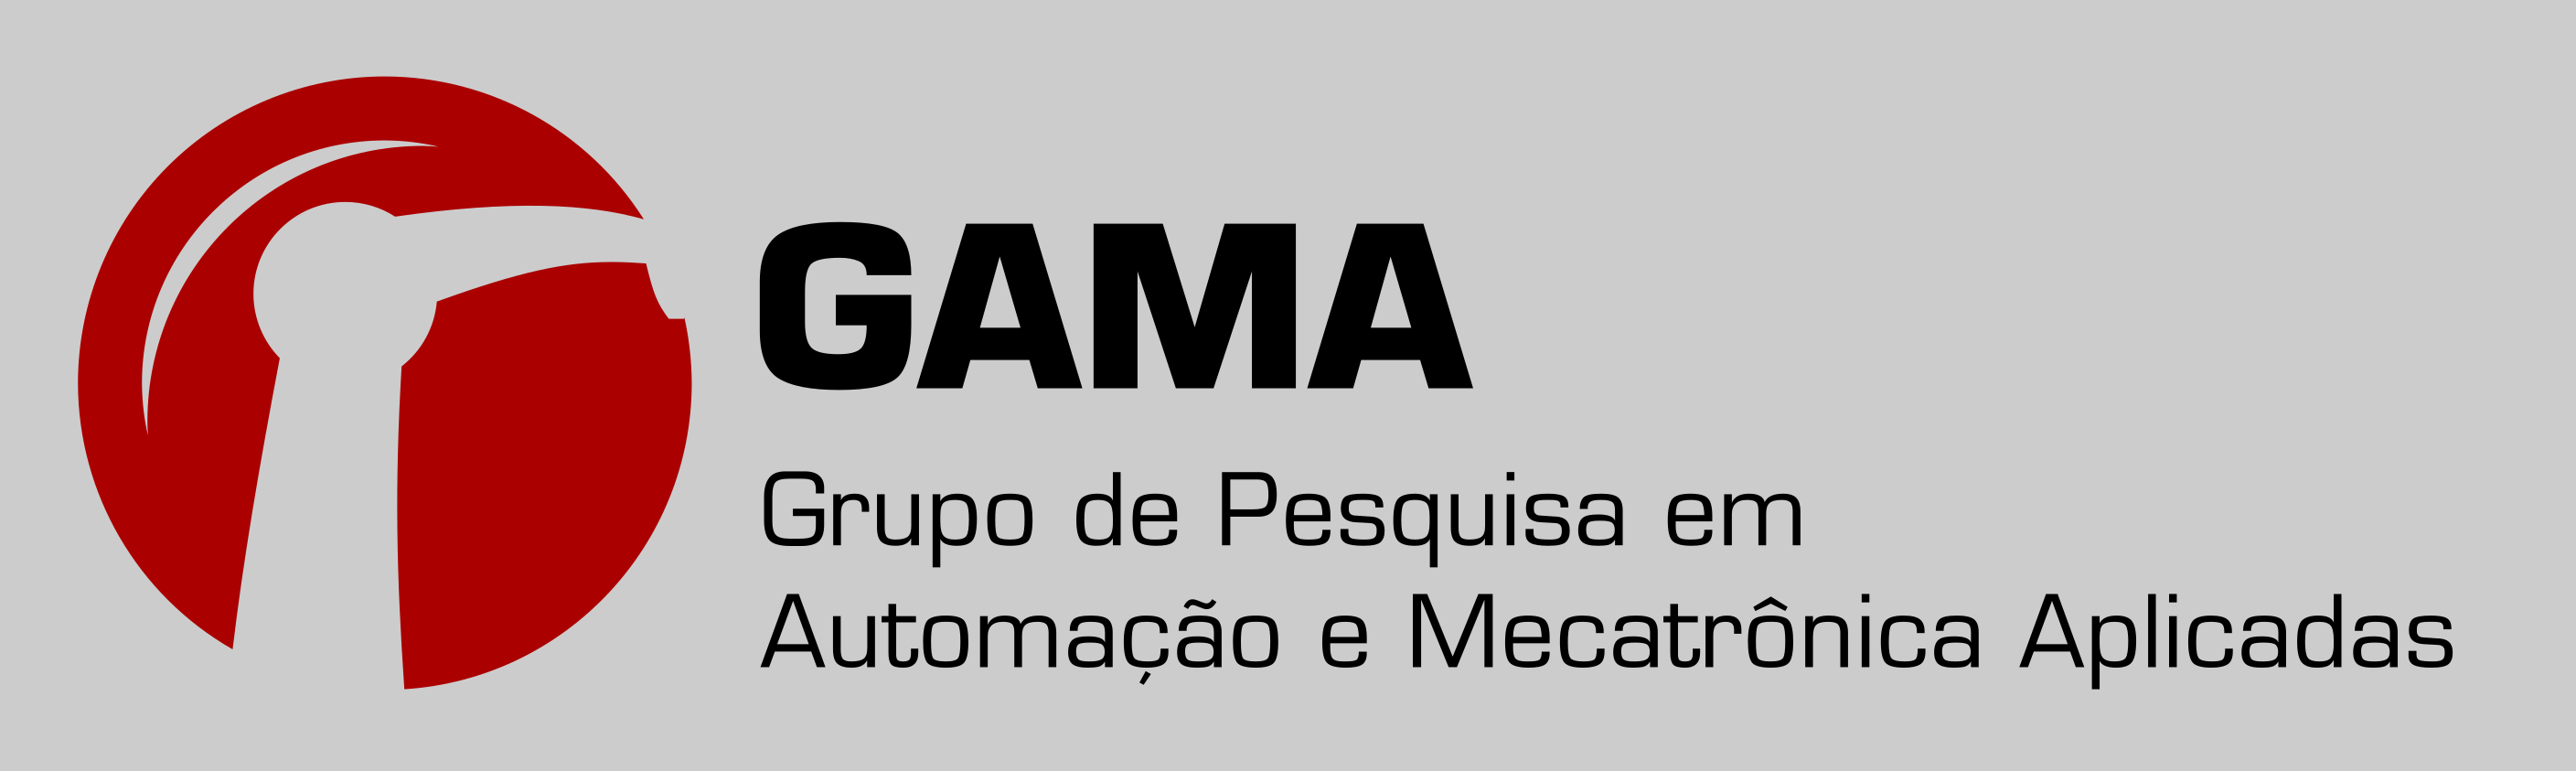 Instituto Federal de São Paulo - Câmpus Registro - Instituto Federal de São  Paulo - Câmpus Registro